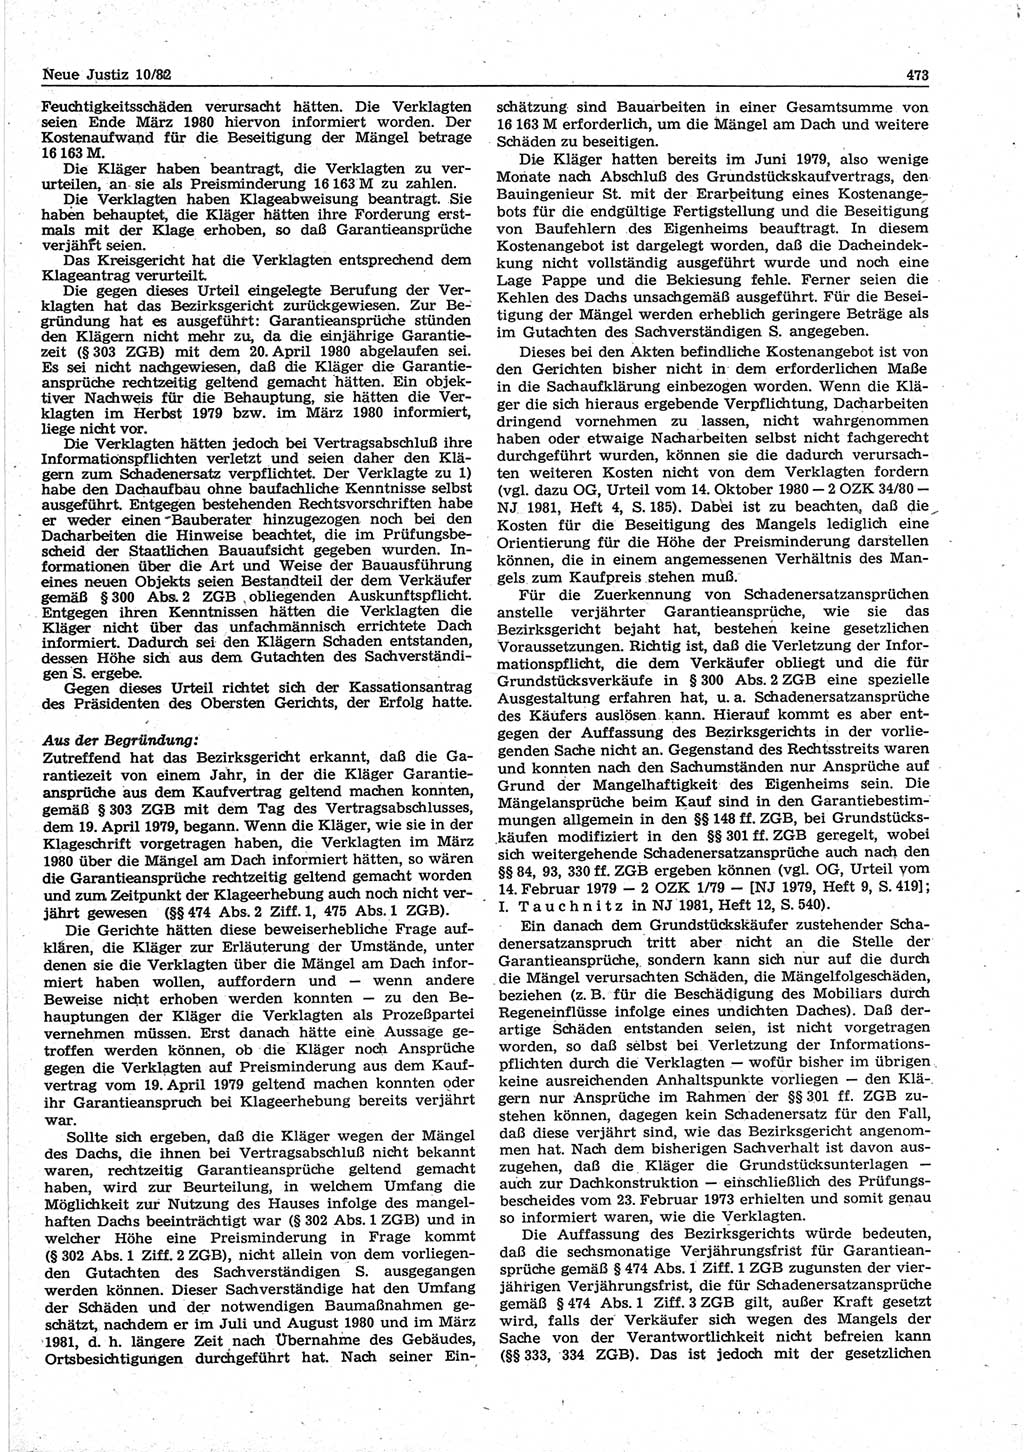 Neue Justiz (NJ), Zeitschrift für sozialistisches Recht und Gesetzlichkeit [Deutsche Demokratische Republik (DDR)], 36. Jahrgang 1982, Seite 473 (NJ DDR 1982, S. 473)